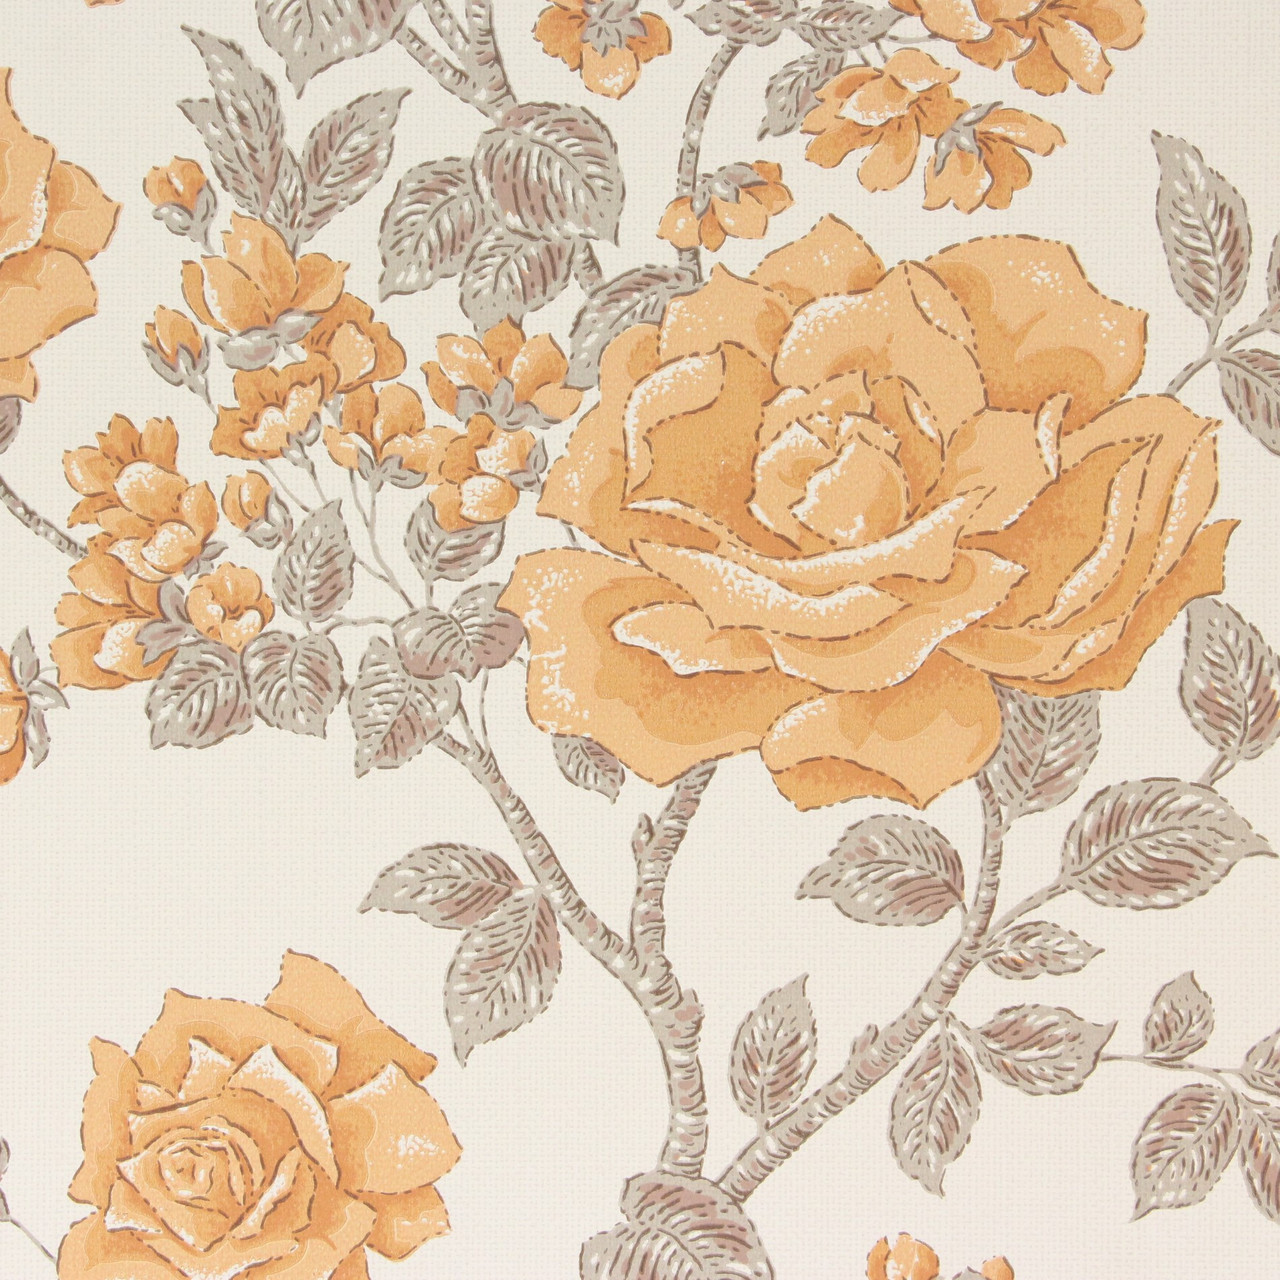 Những bông hoa hồng thập niên 1970 tràn đầy nét đáng yêu và nữ tính trên giấy dán tường vintage hồng cam sẽ làm chủ nhân của căn phòng của bạn cảm thấy rất vui và tươi mới. Hãy tìm hiểu chi tiết hơn về sản phẩm tại Etsy và mang lại sự ấm áp cho không gian của bạn.